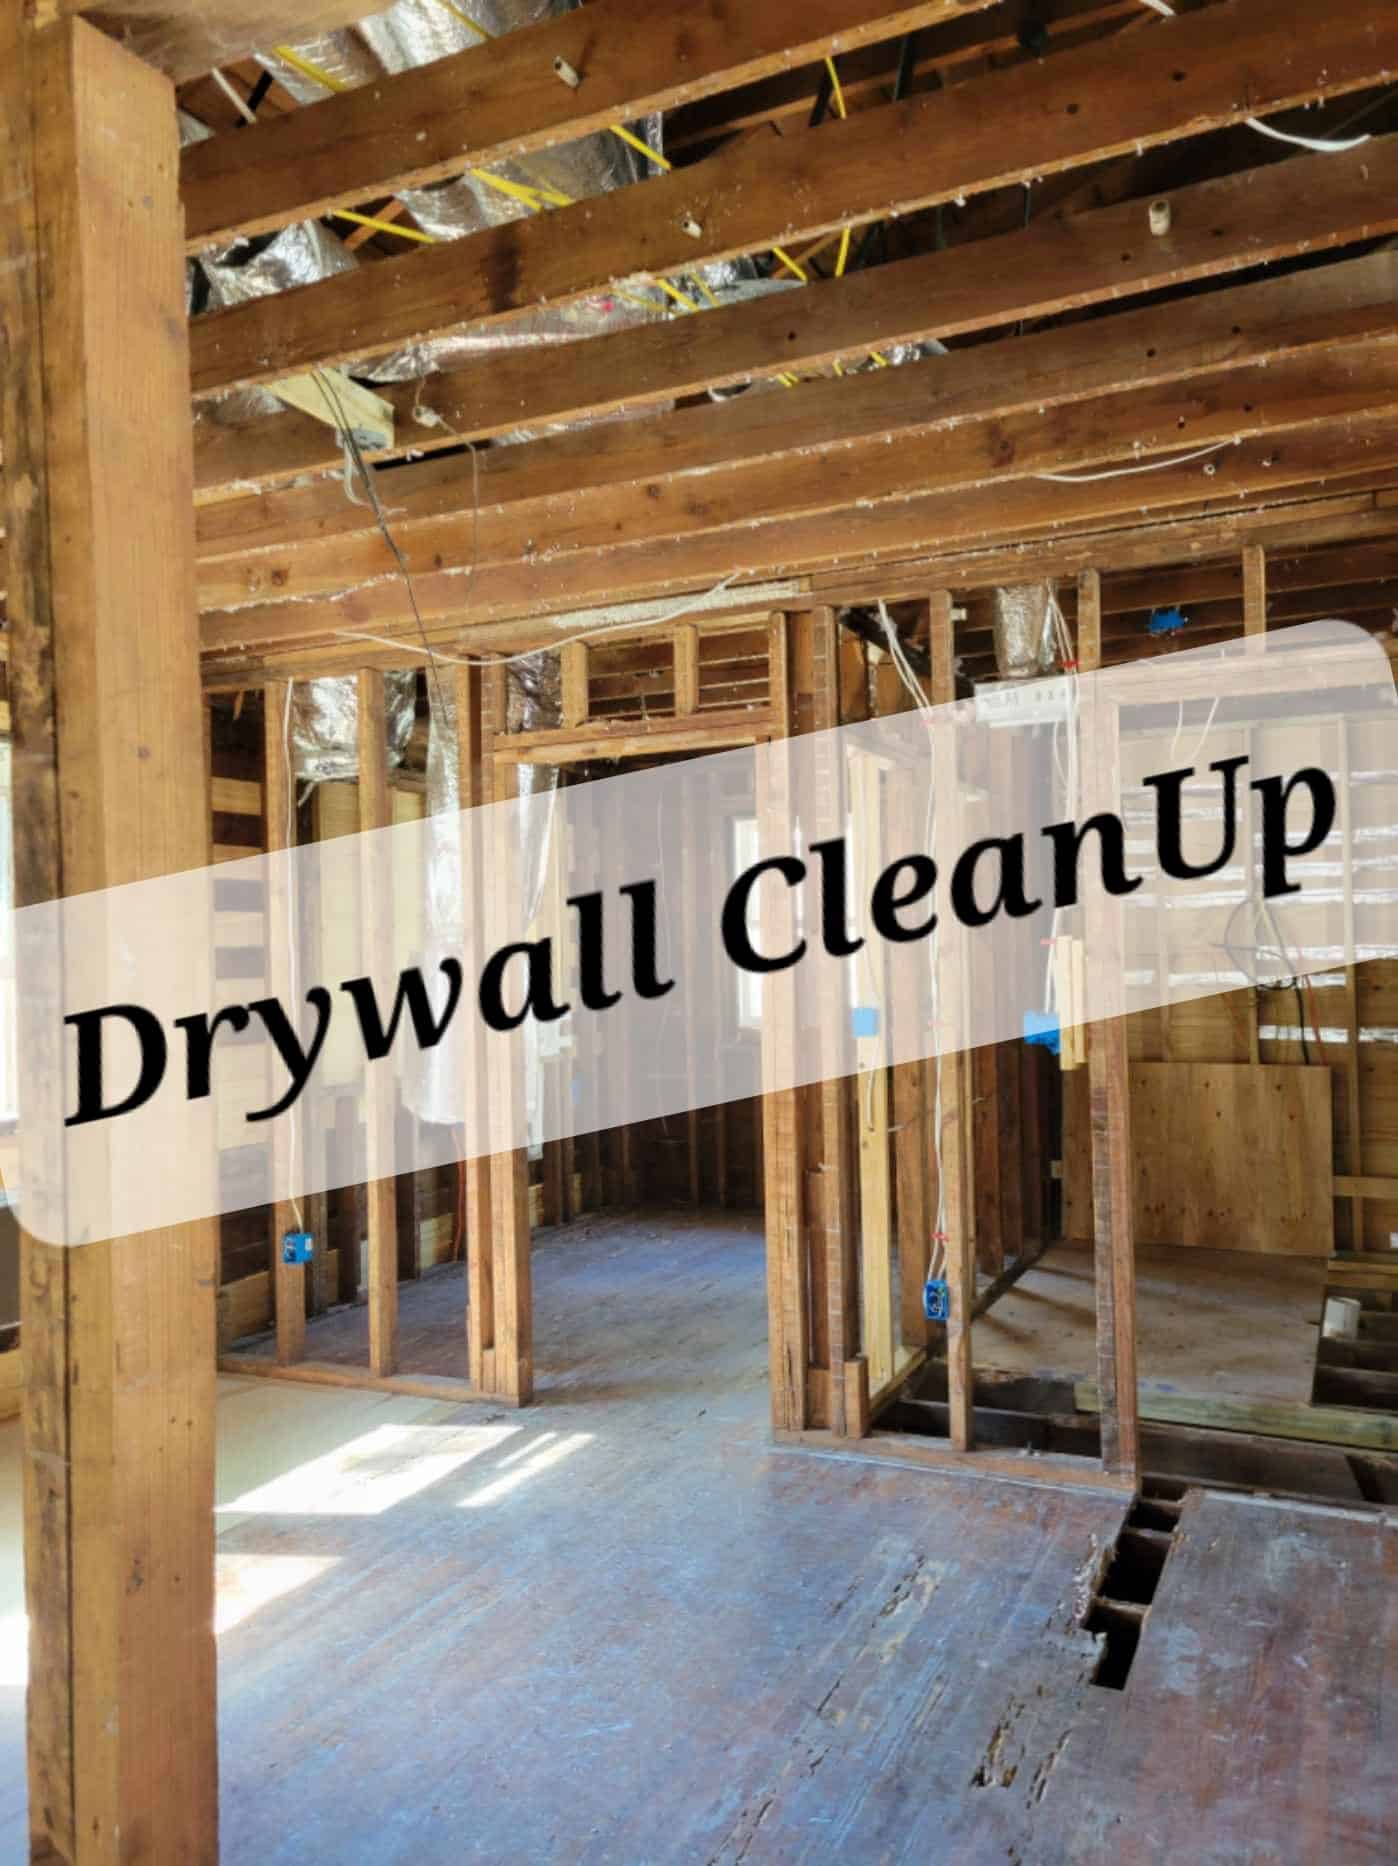 Drywall Demolition